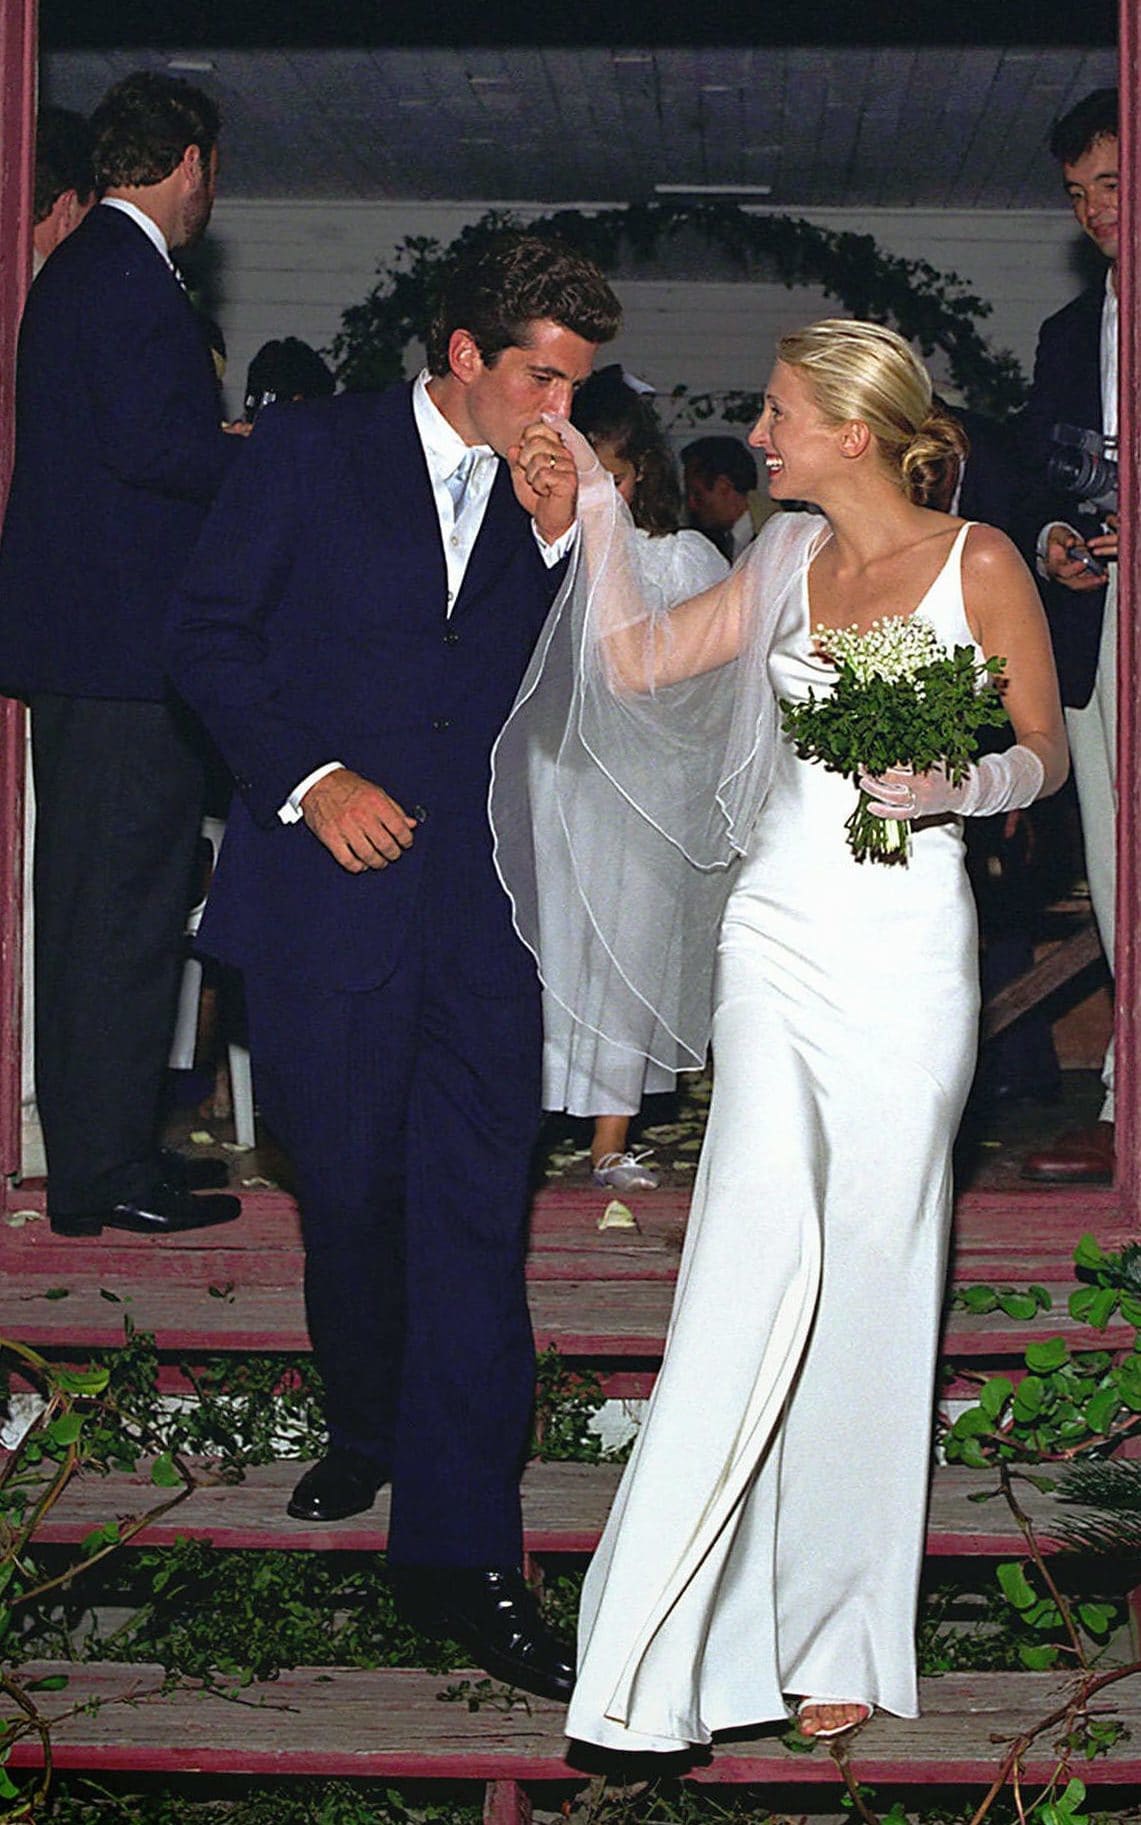 90s Wedding Dress Trends We Love